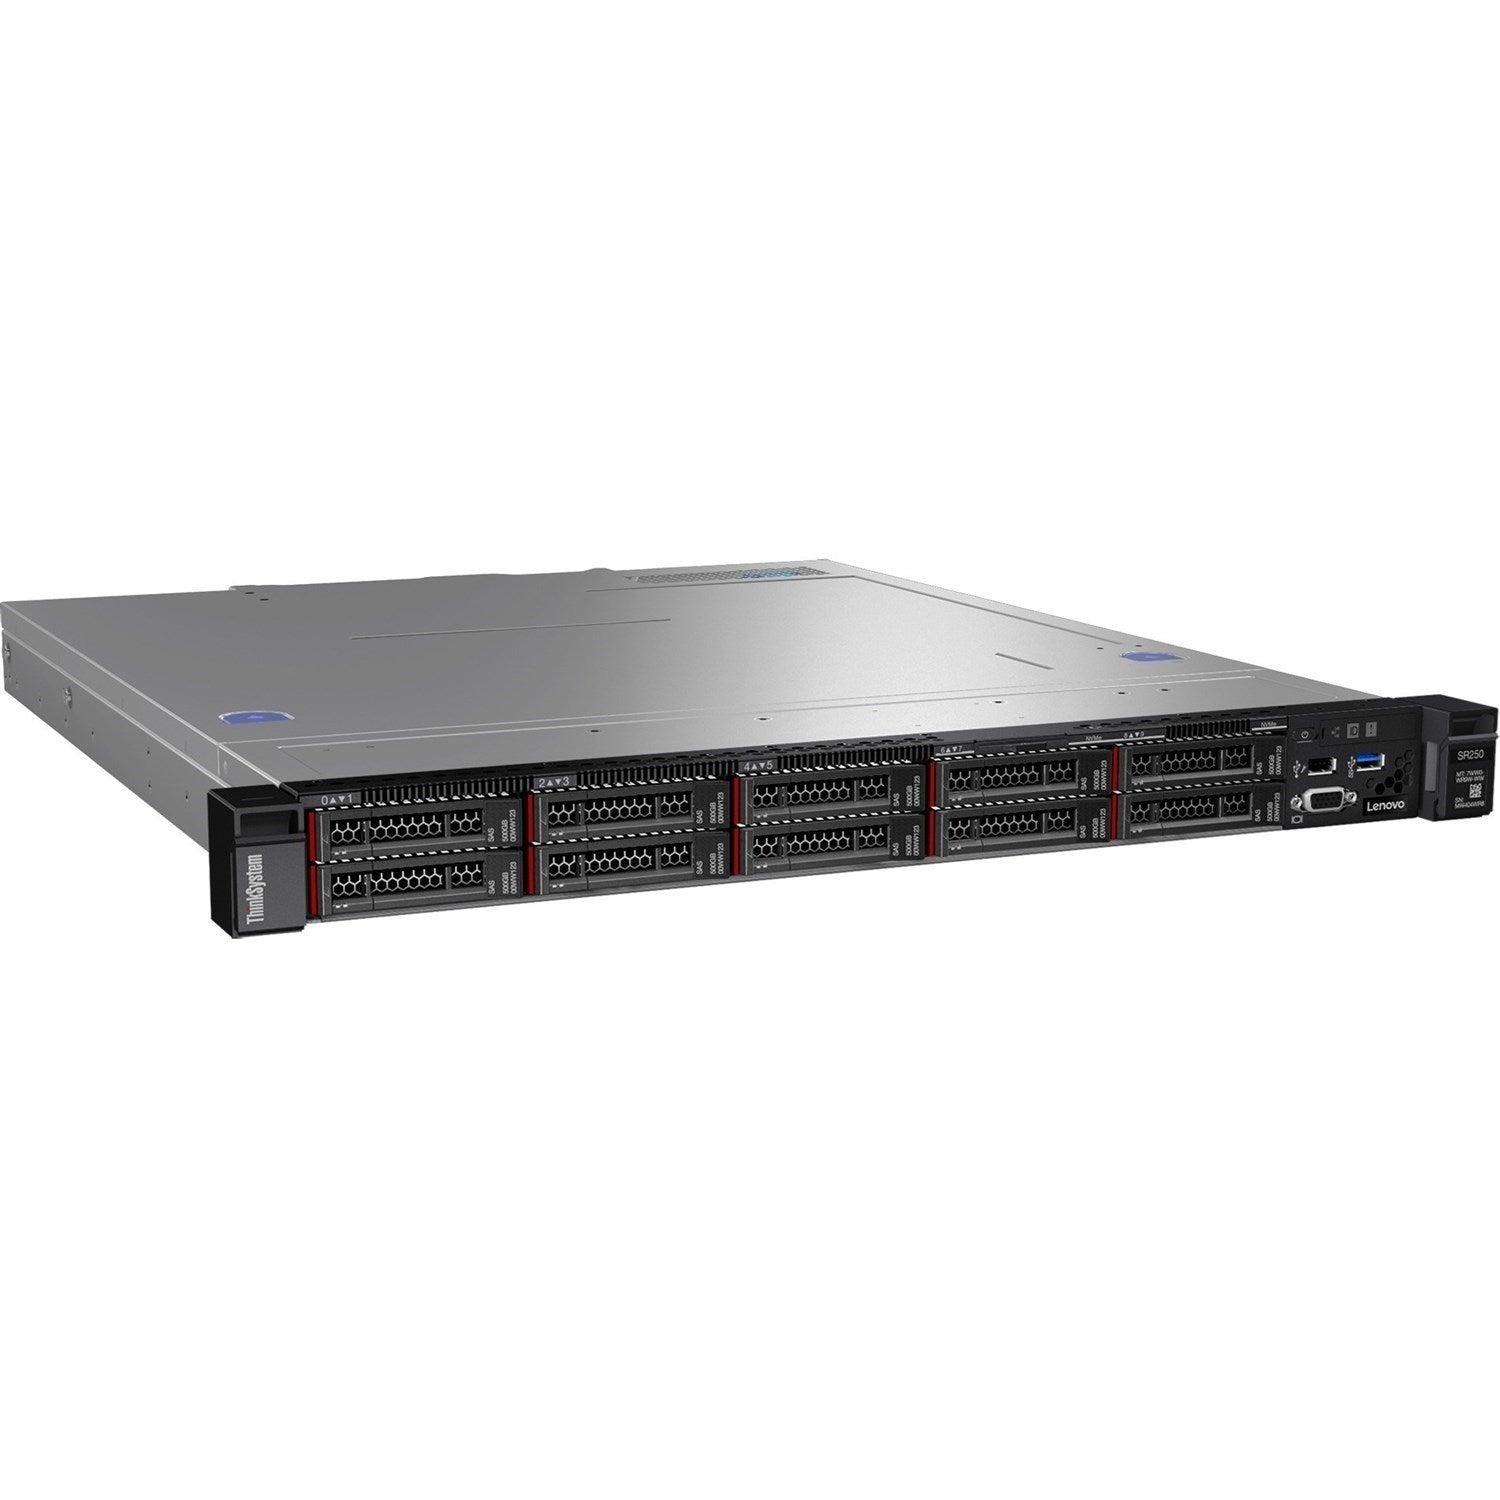 LENOVO ThinkSystem SR250 1U Rack Server, 1x Intel Xeon E-2126G 3.3GHz, 1 x8GB 1Rx8, SW RD, 4 x 3.5' HS Bays, 1x450W PSU, 3 Year Warranty LENOVO